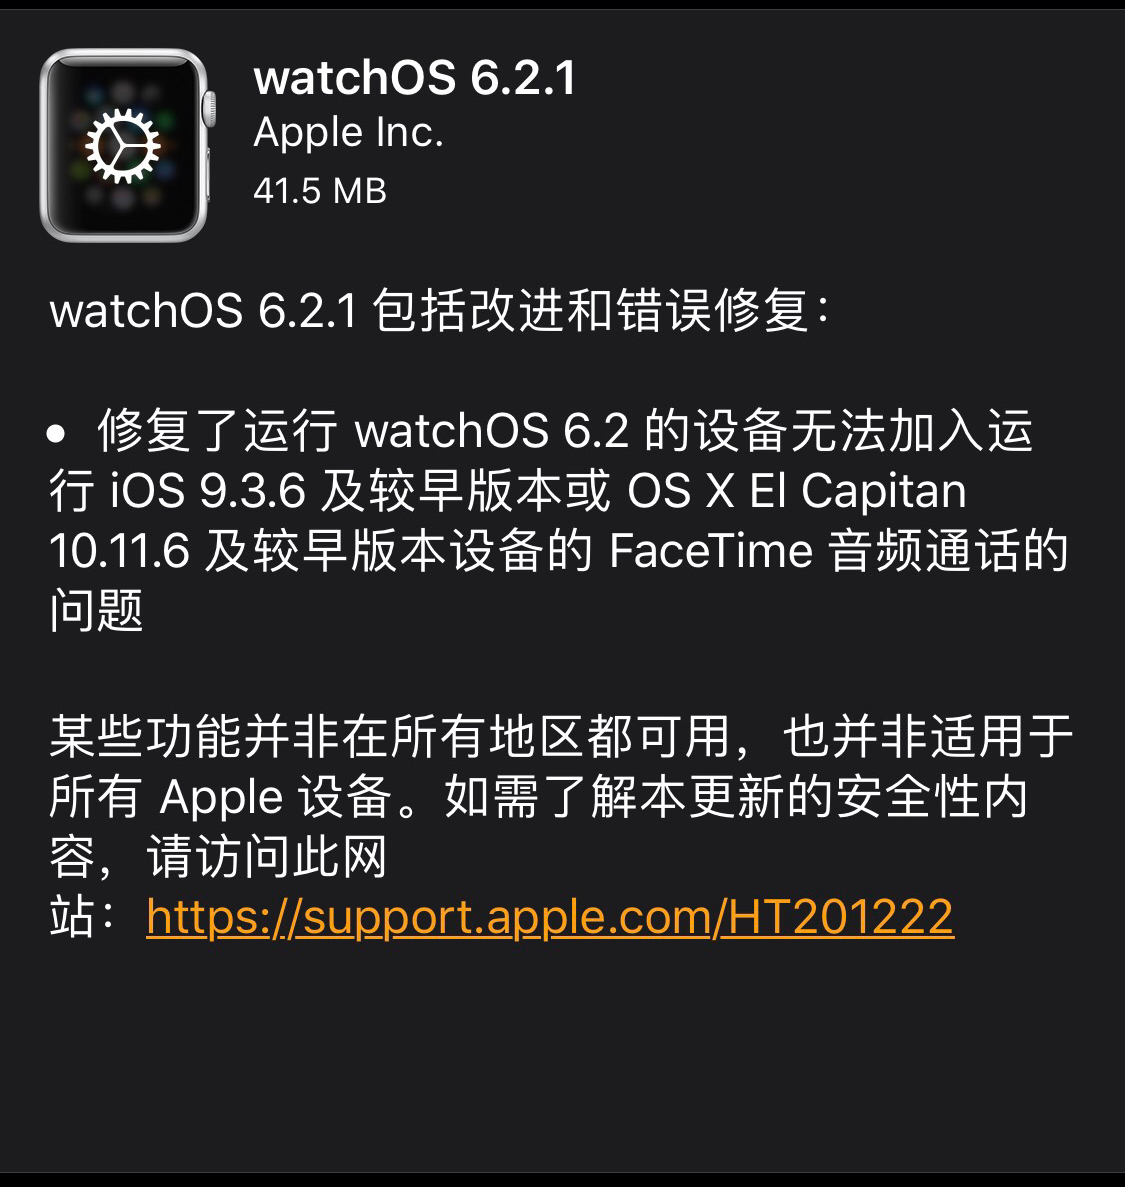 Apple  watchOS 6.2.1޸ FaceTime 